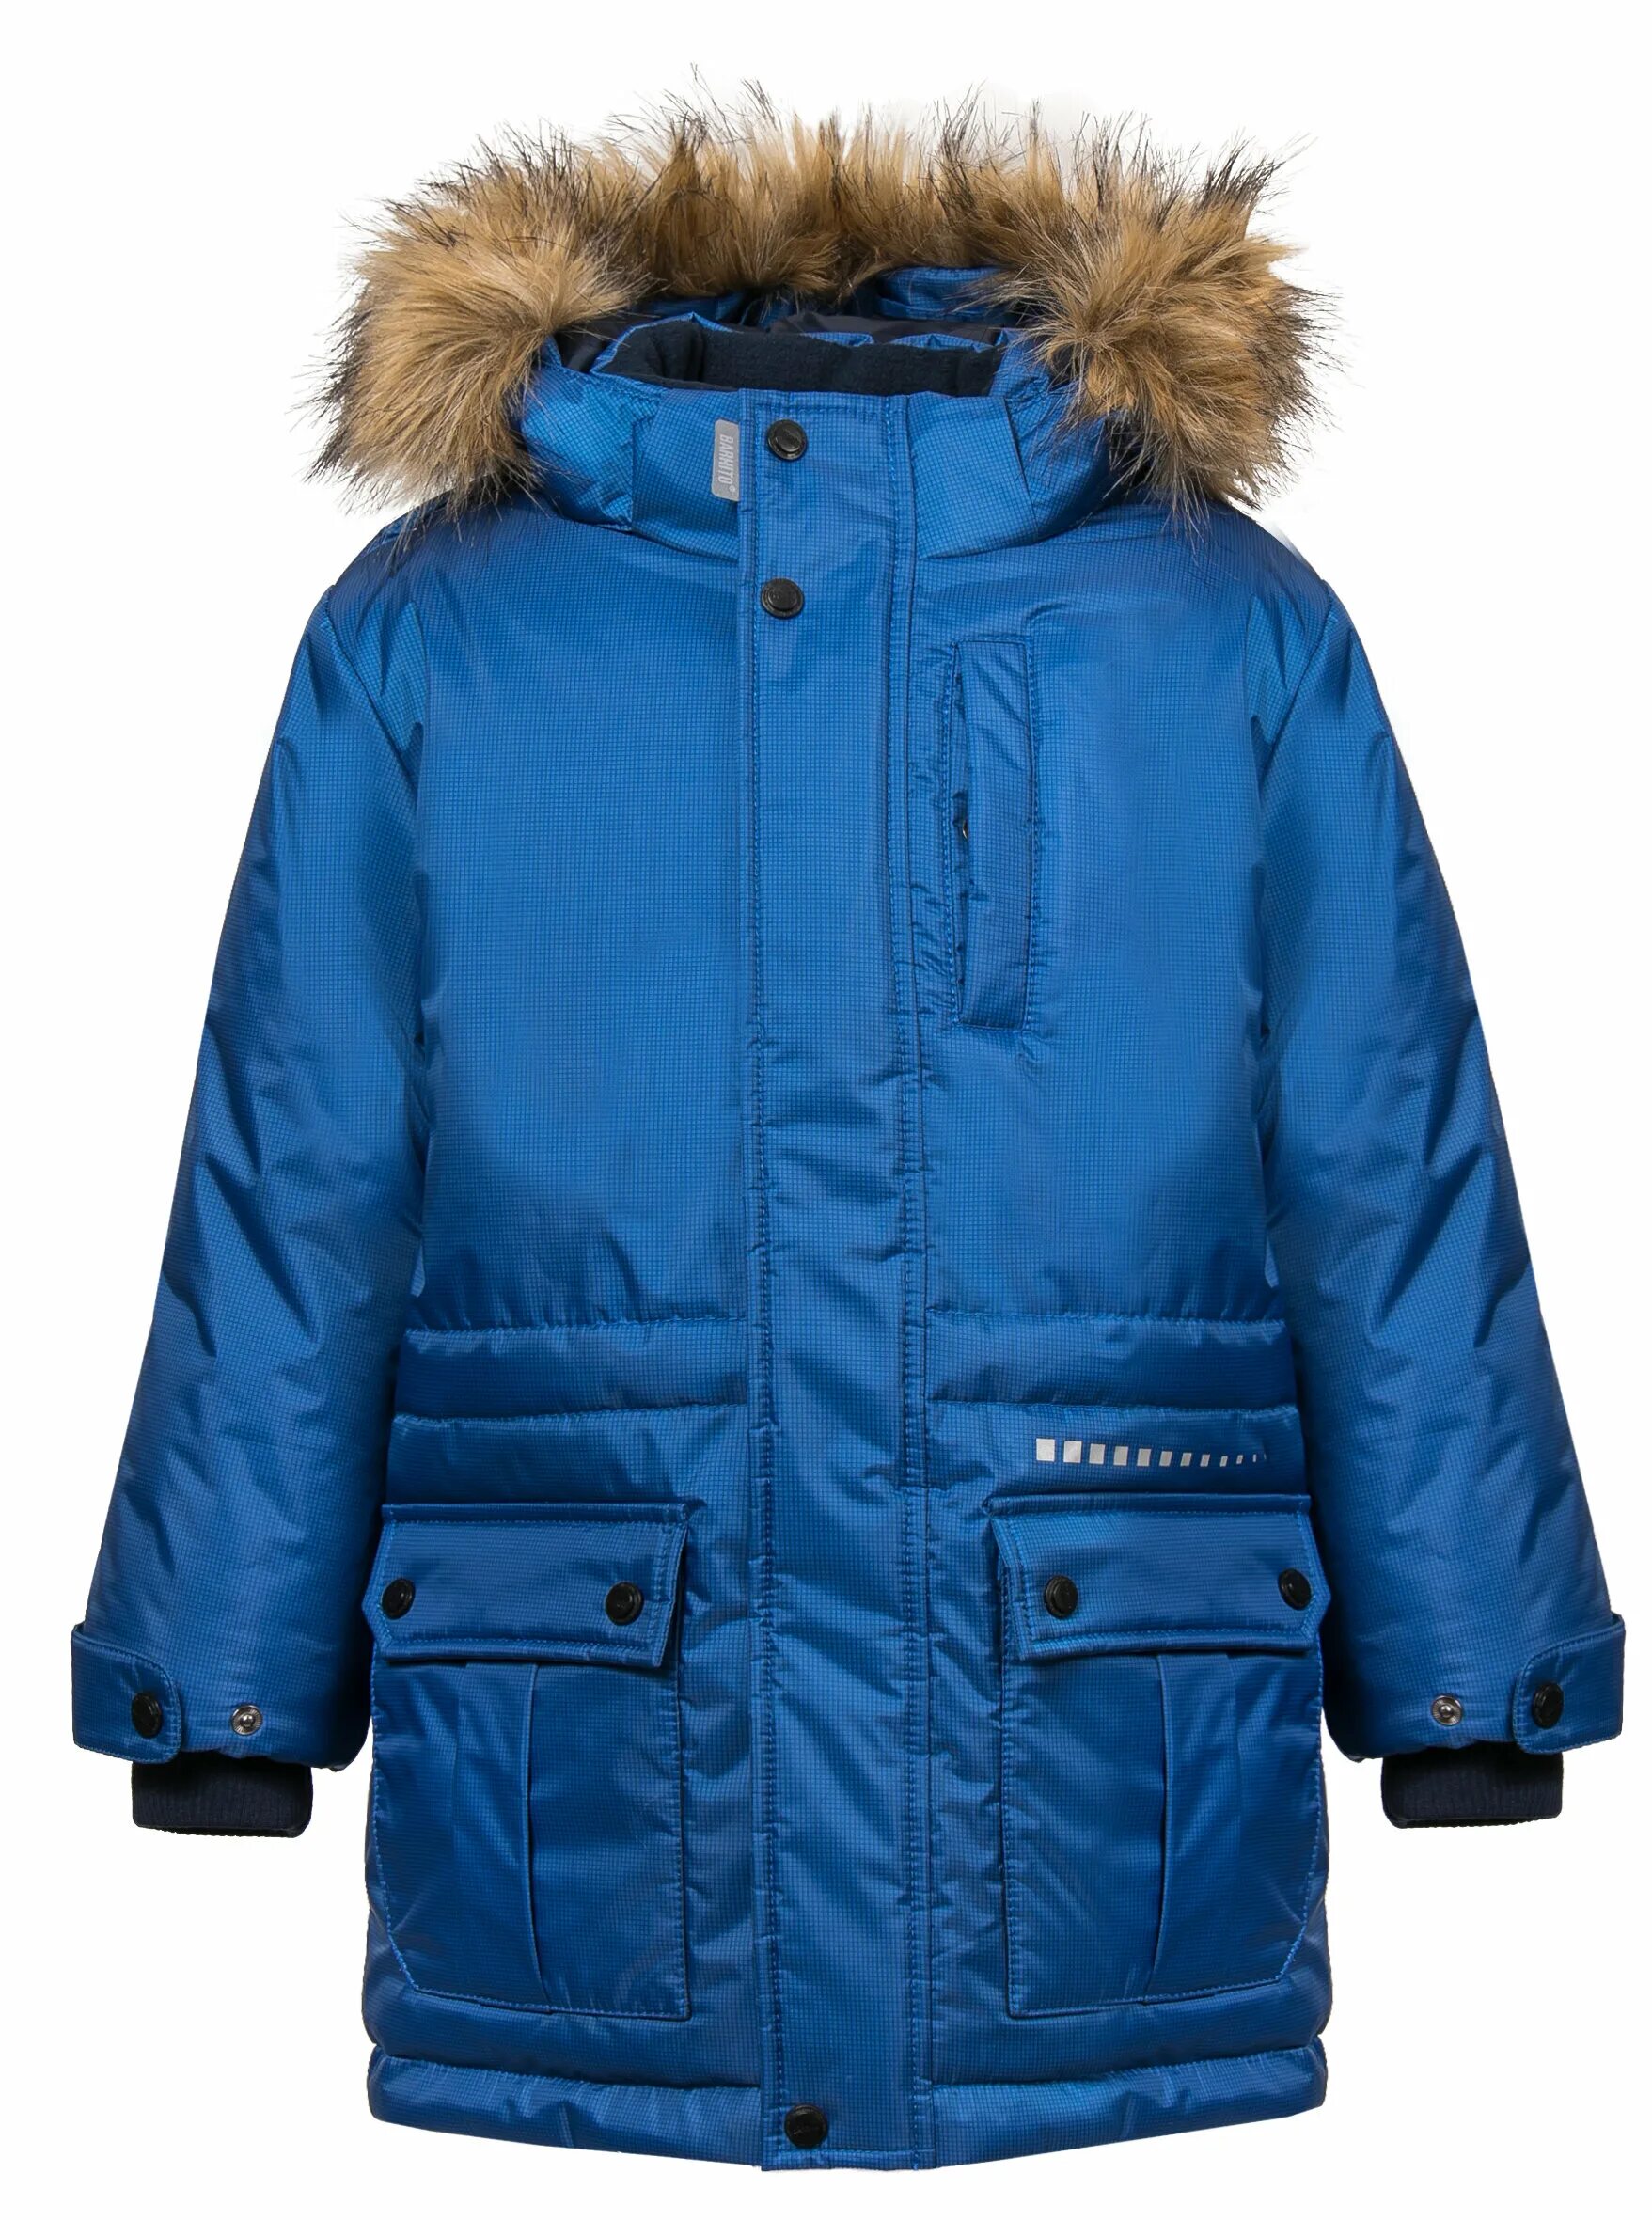 Авито купить куртку для мальчика. Куртка Баркито для мальчика зима синяя. Куртка Баркито для мальчика зима. Куртка зимняя Баркито для мальчика. Куртка для мальчика зимняя 140 рост.